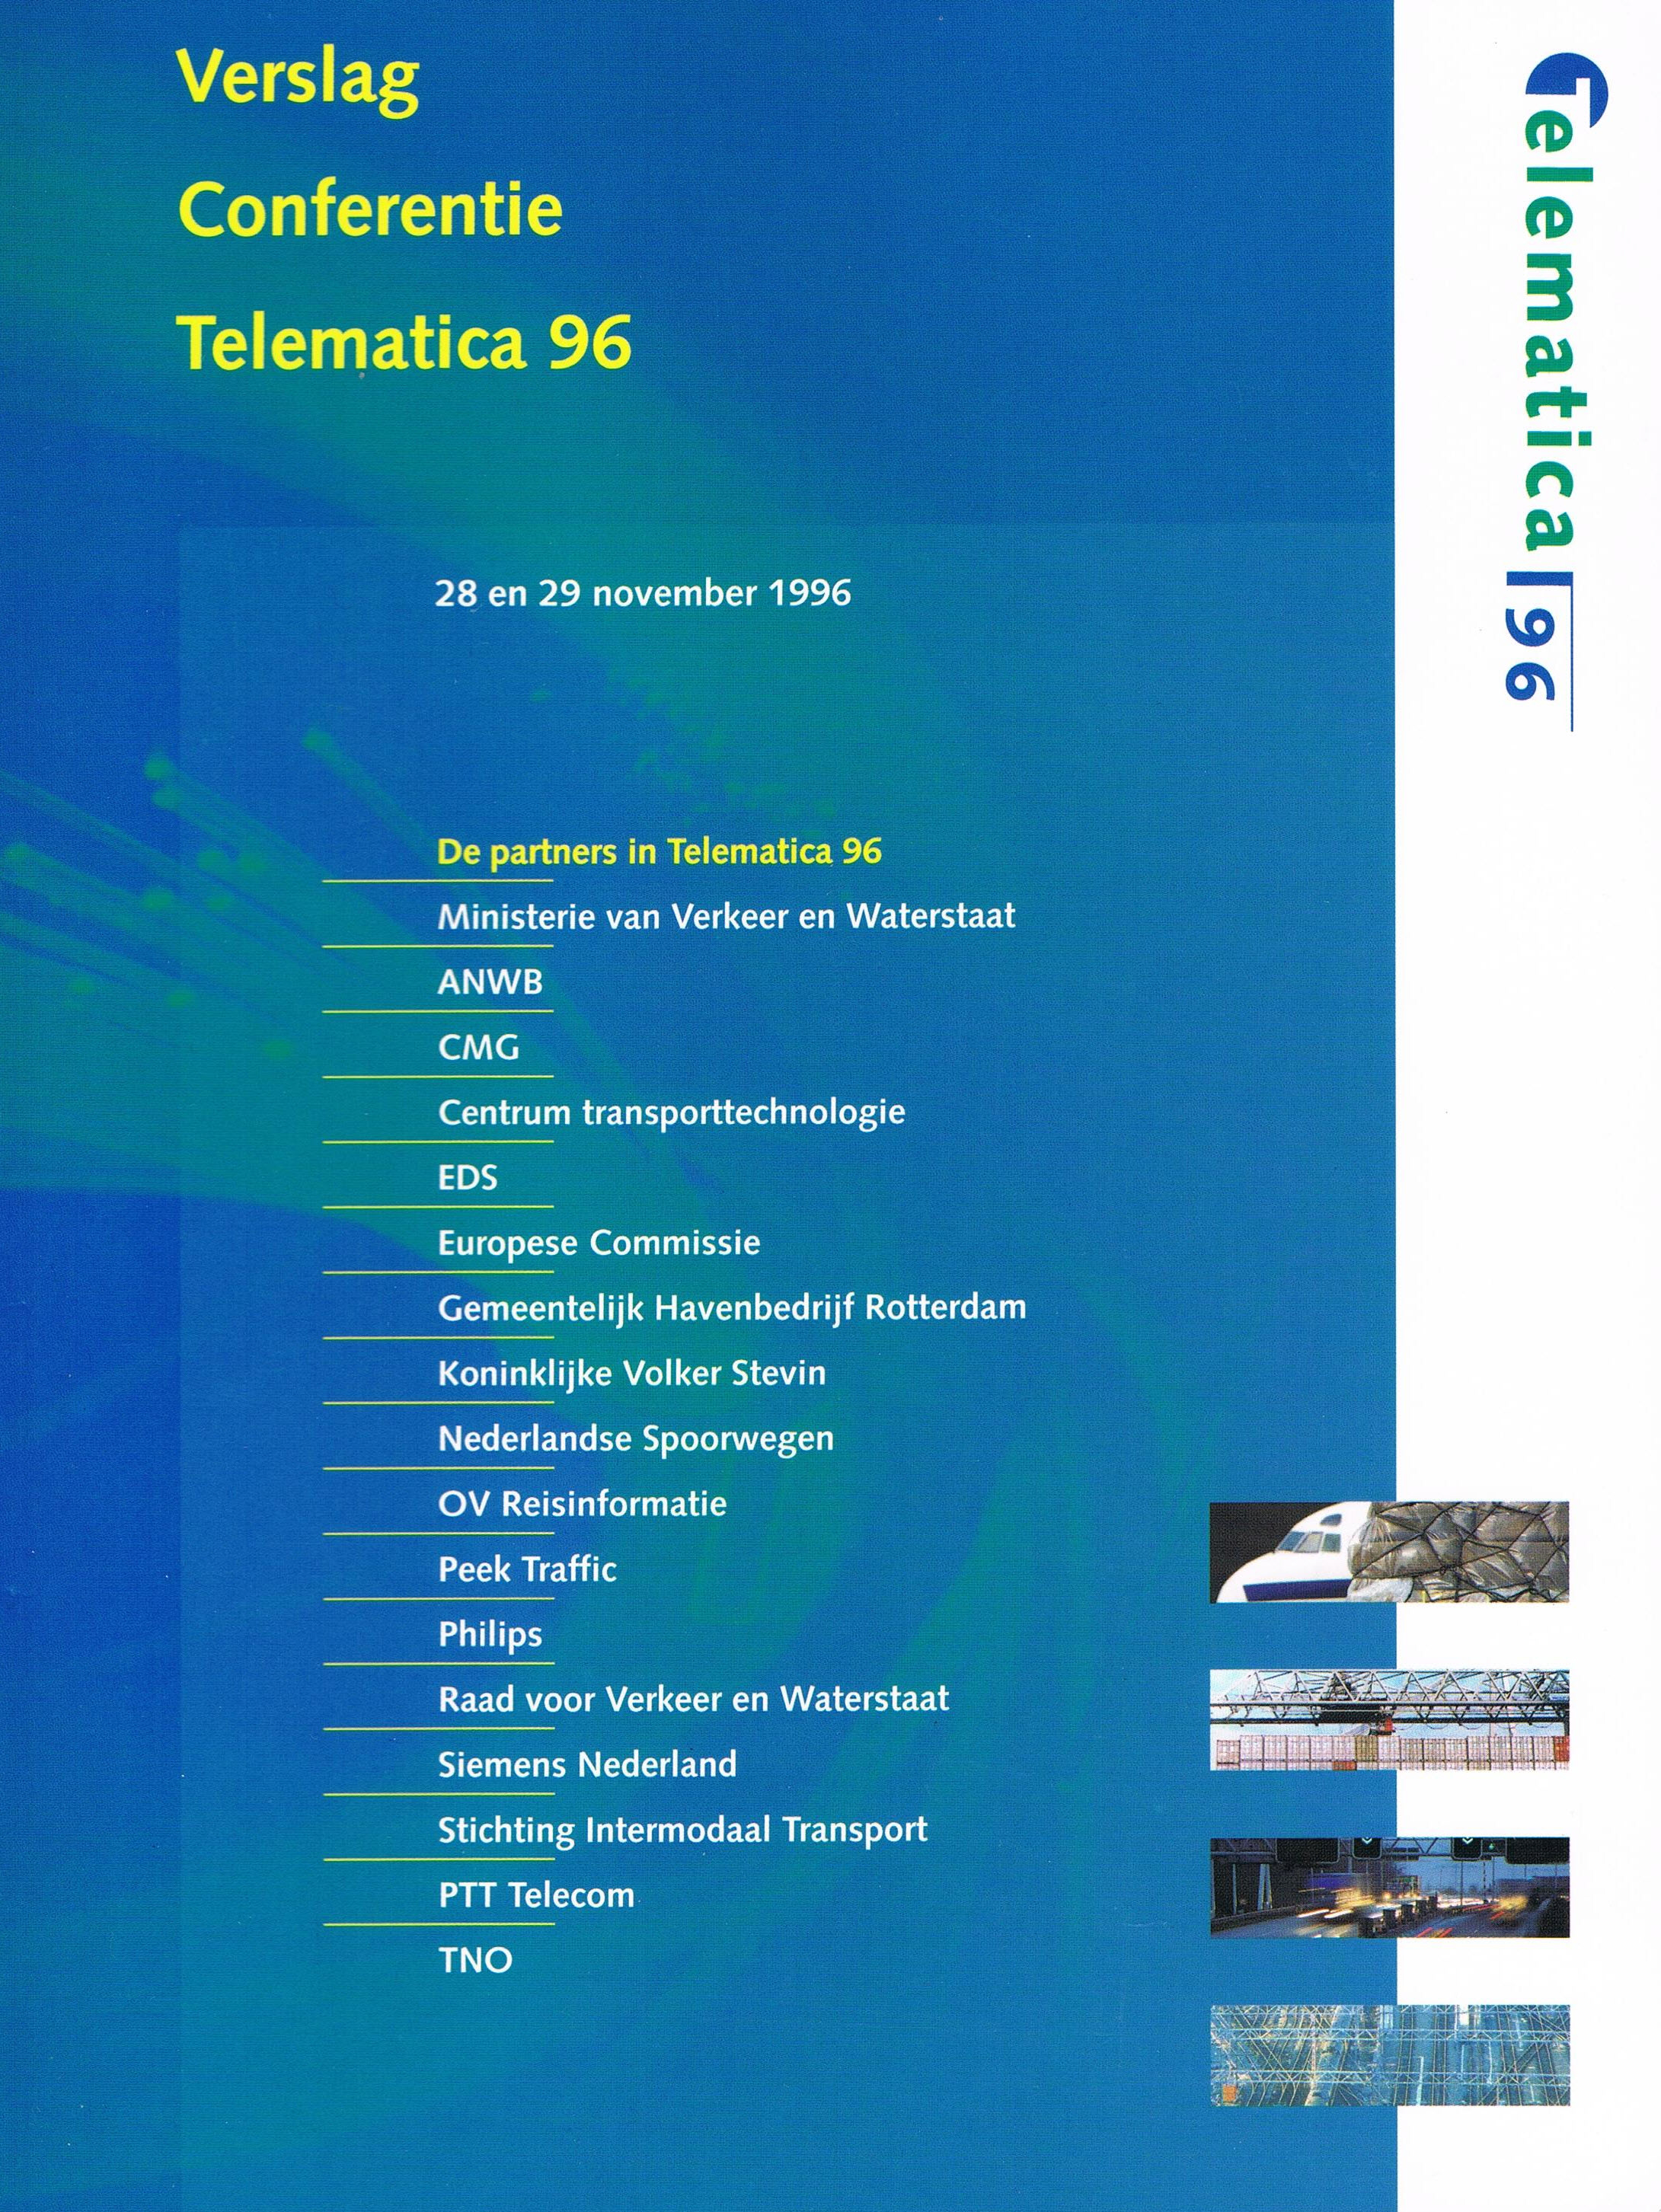 Tijdens het twee-daagse Telematica96 verzorgden 17 partners gezamenlijk 21 sessies